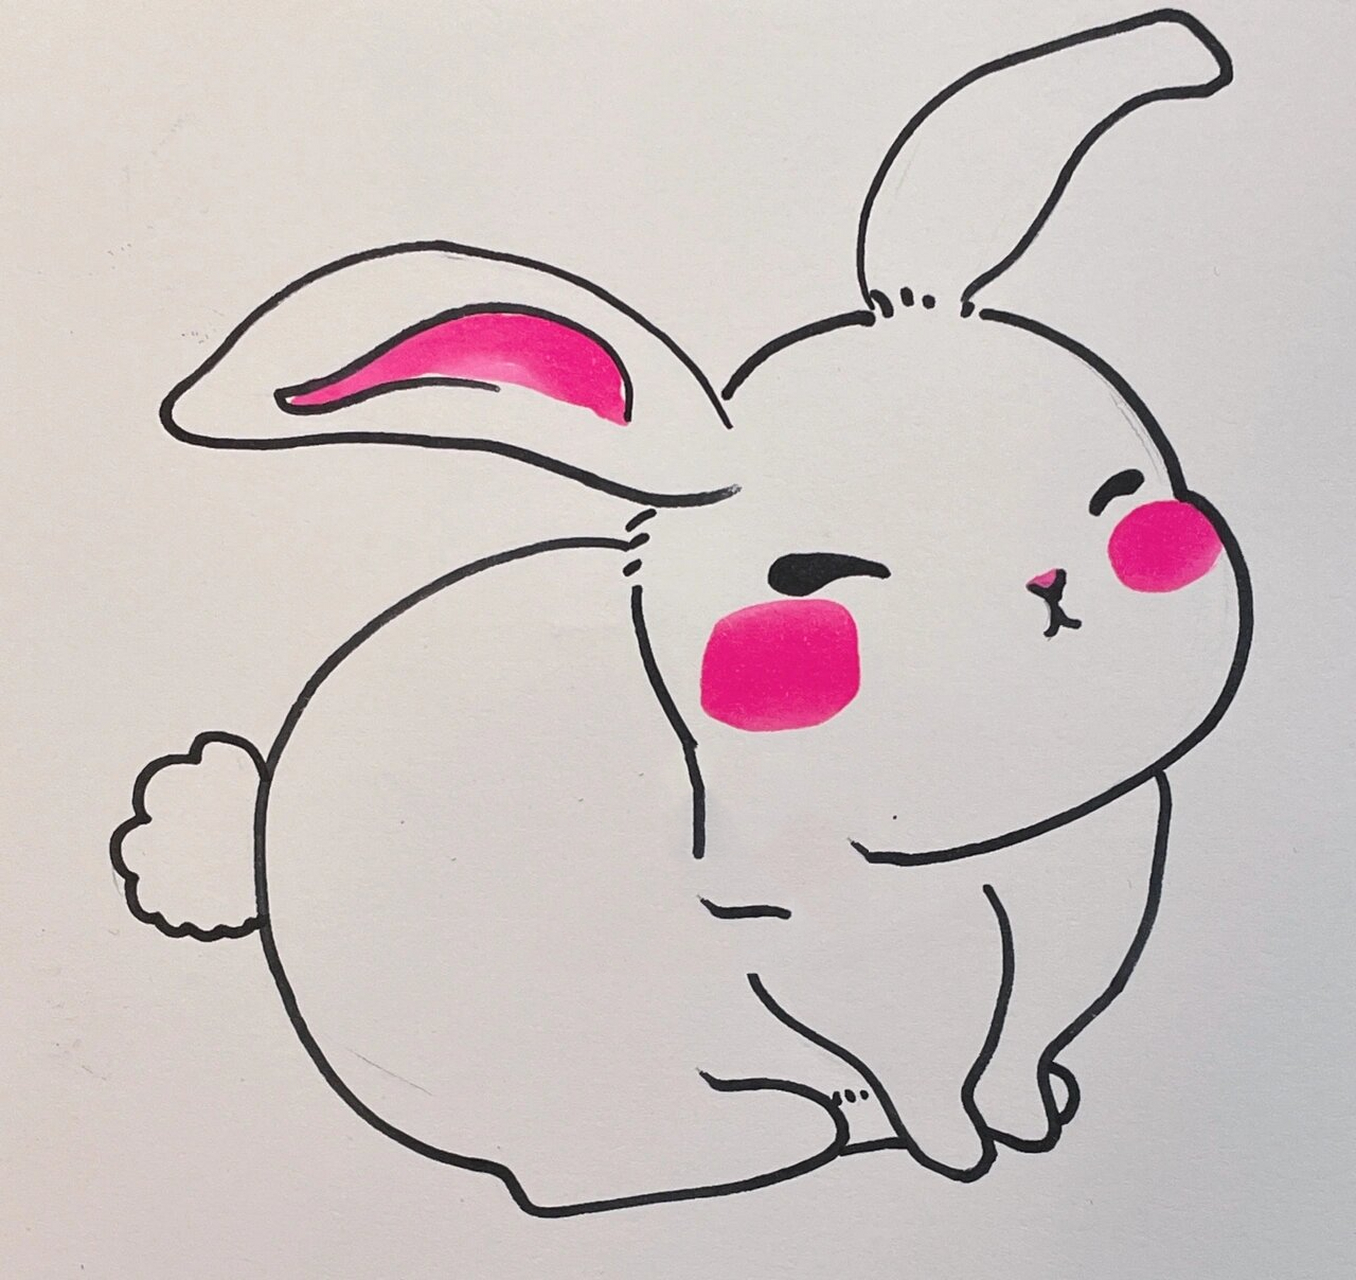 中秋节兔子简笔画可爱图片